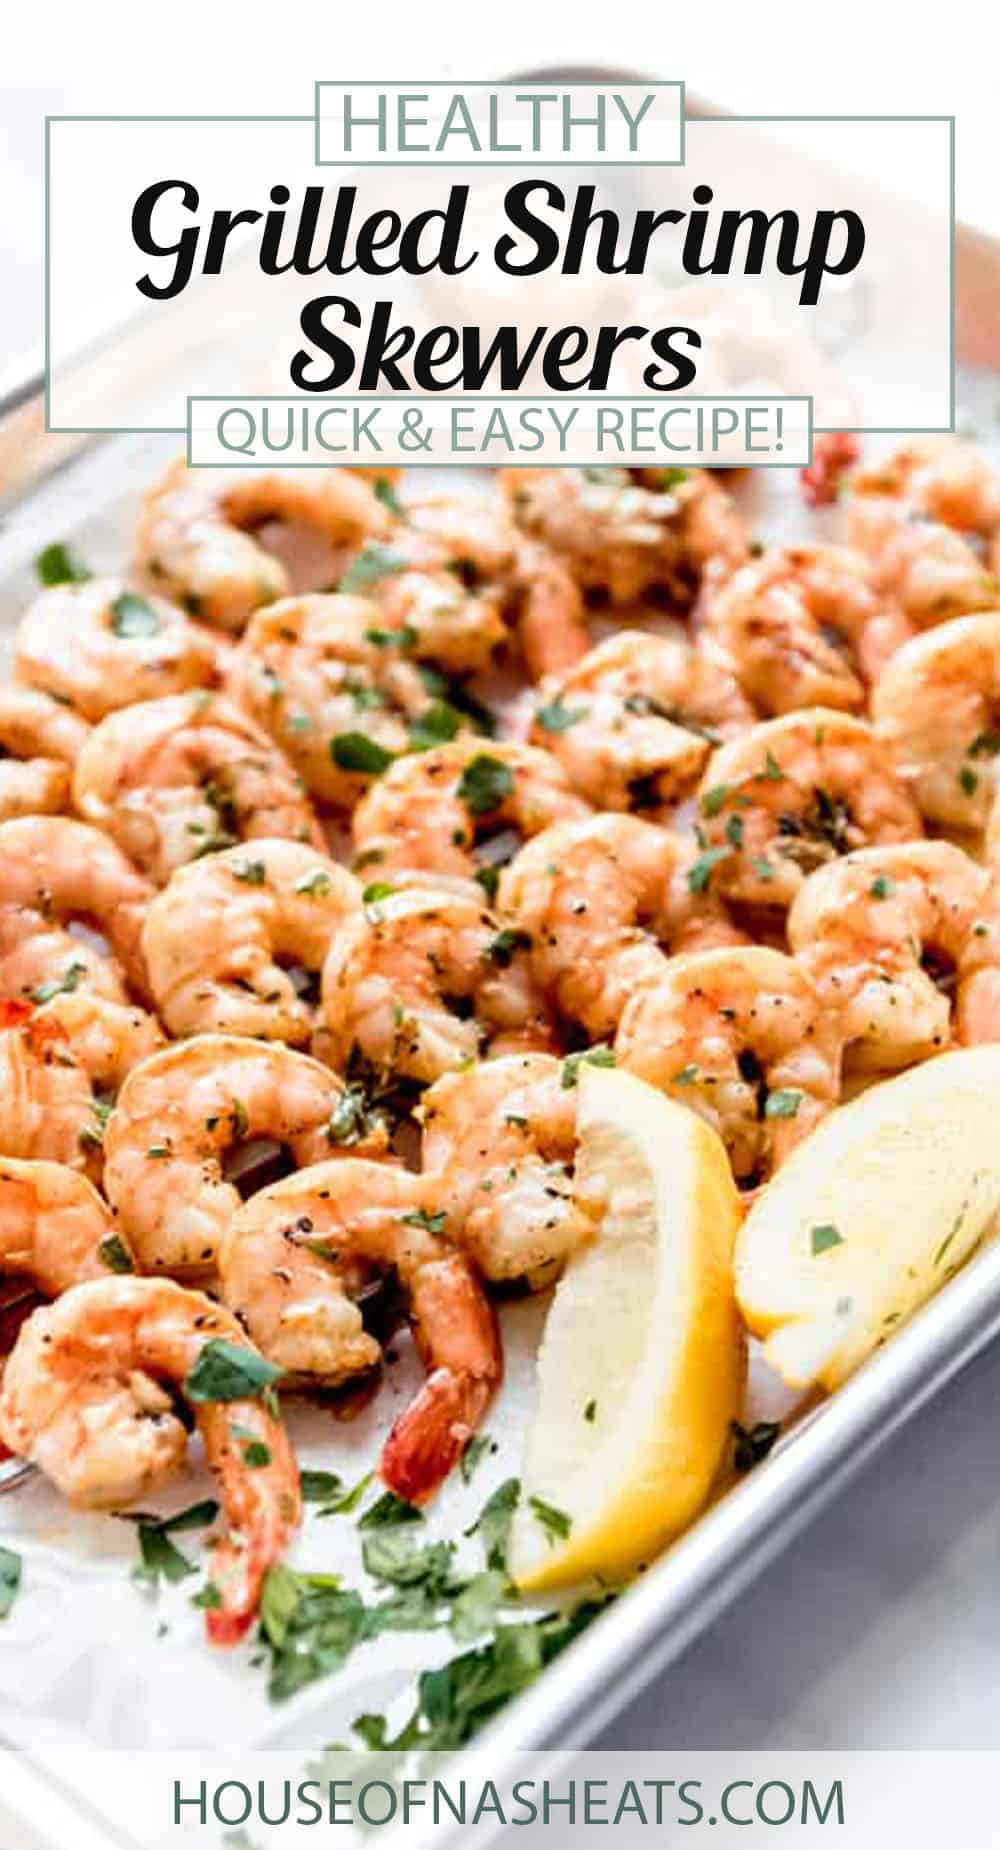 Grilled Shrimp Skewers Recipe - House of Nash Eats